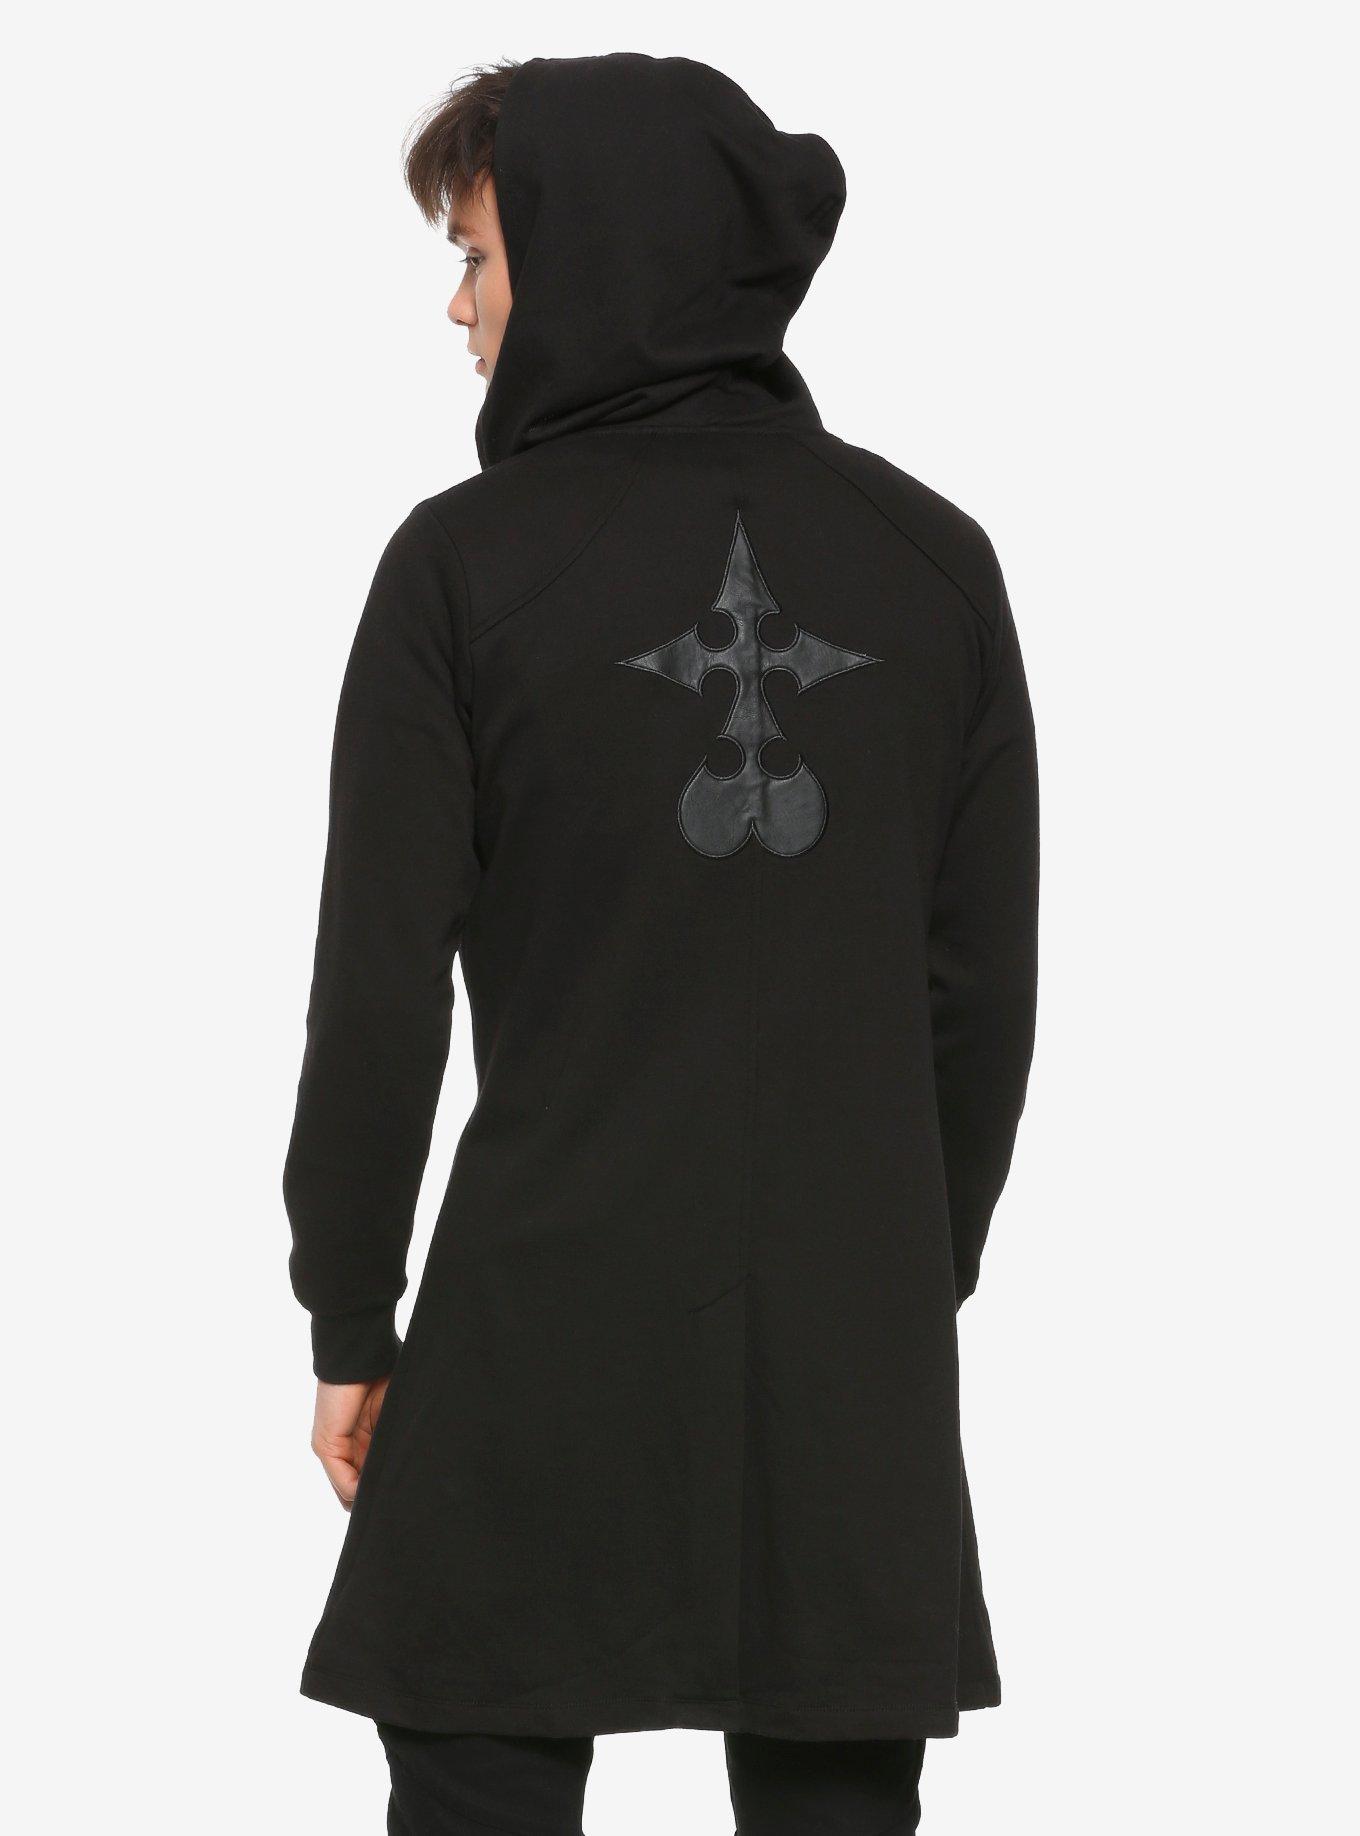 Disney Kingdom Hearts III Organization XIII Hooded Duster Coat Hot